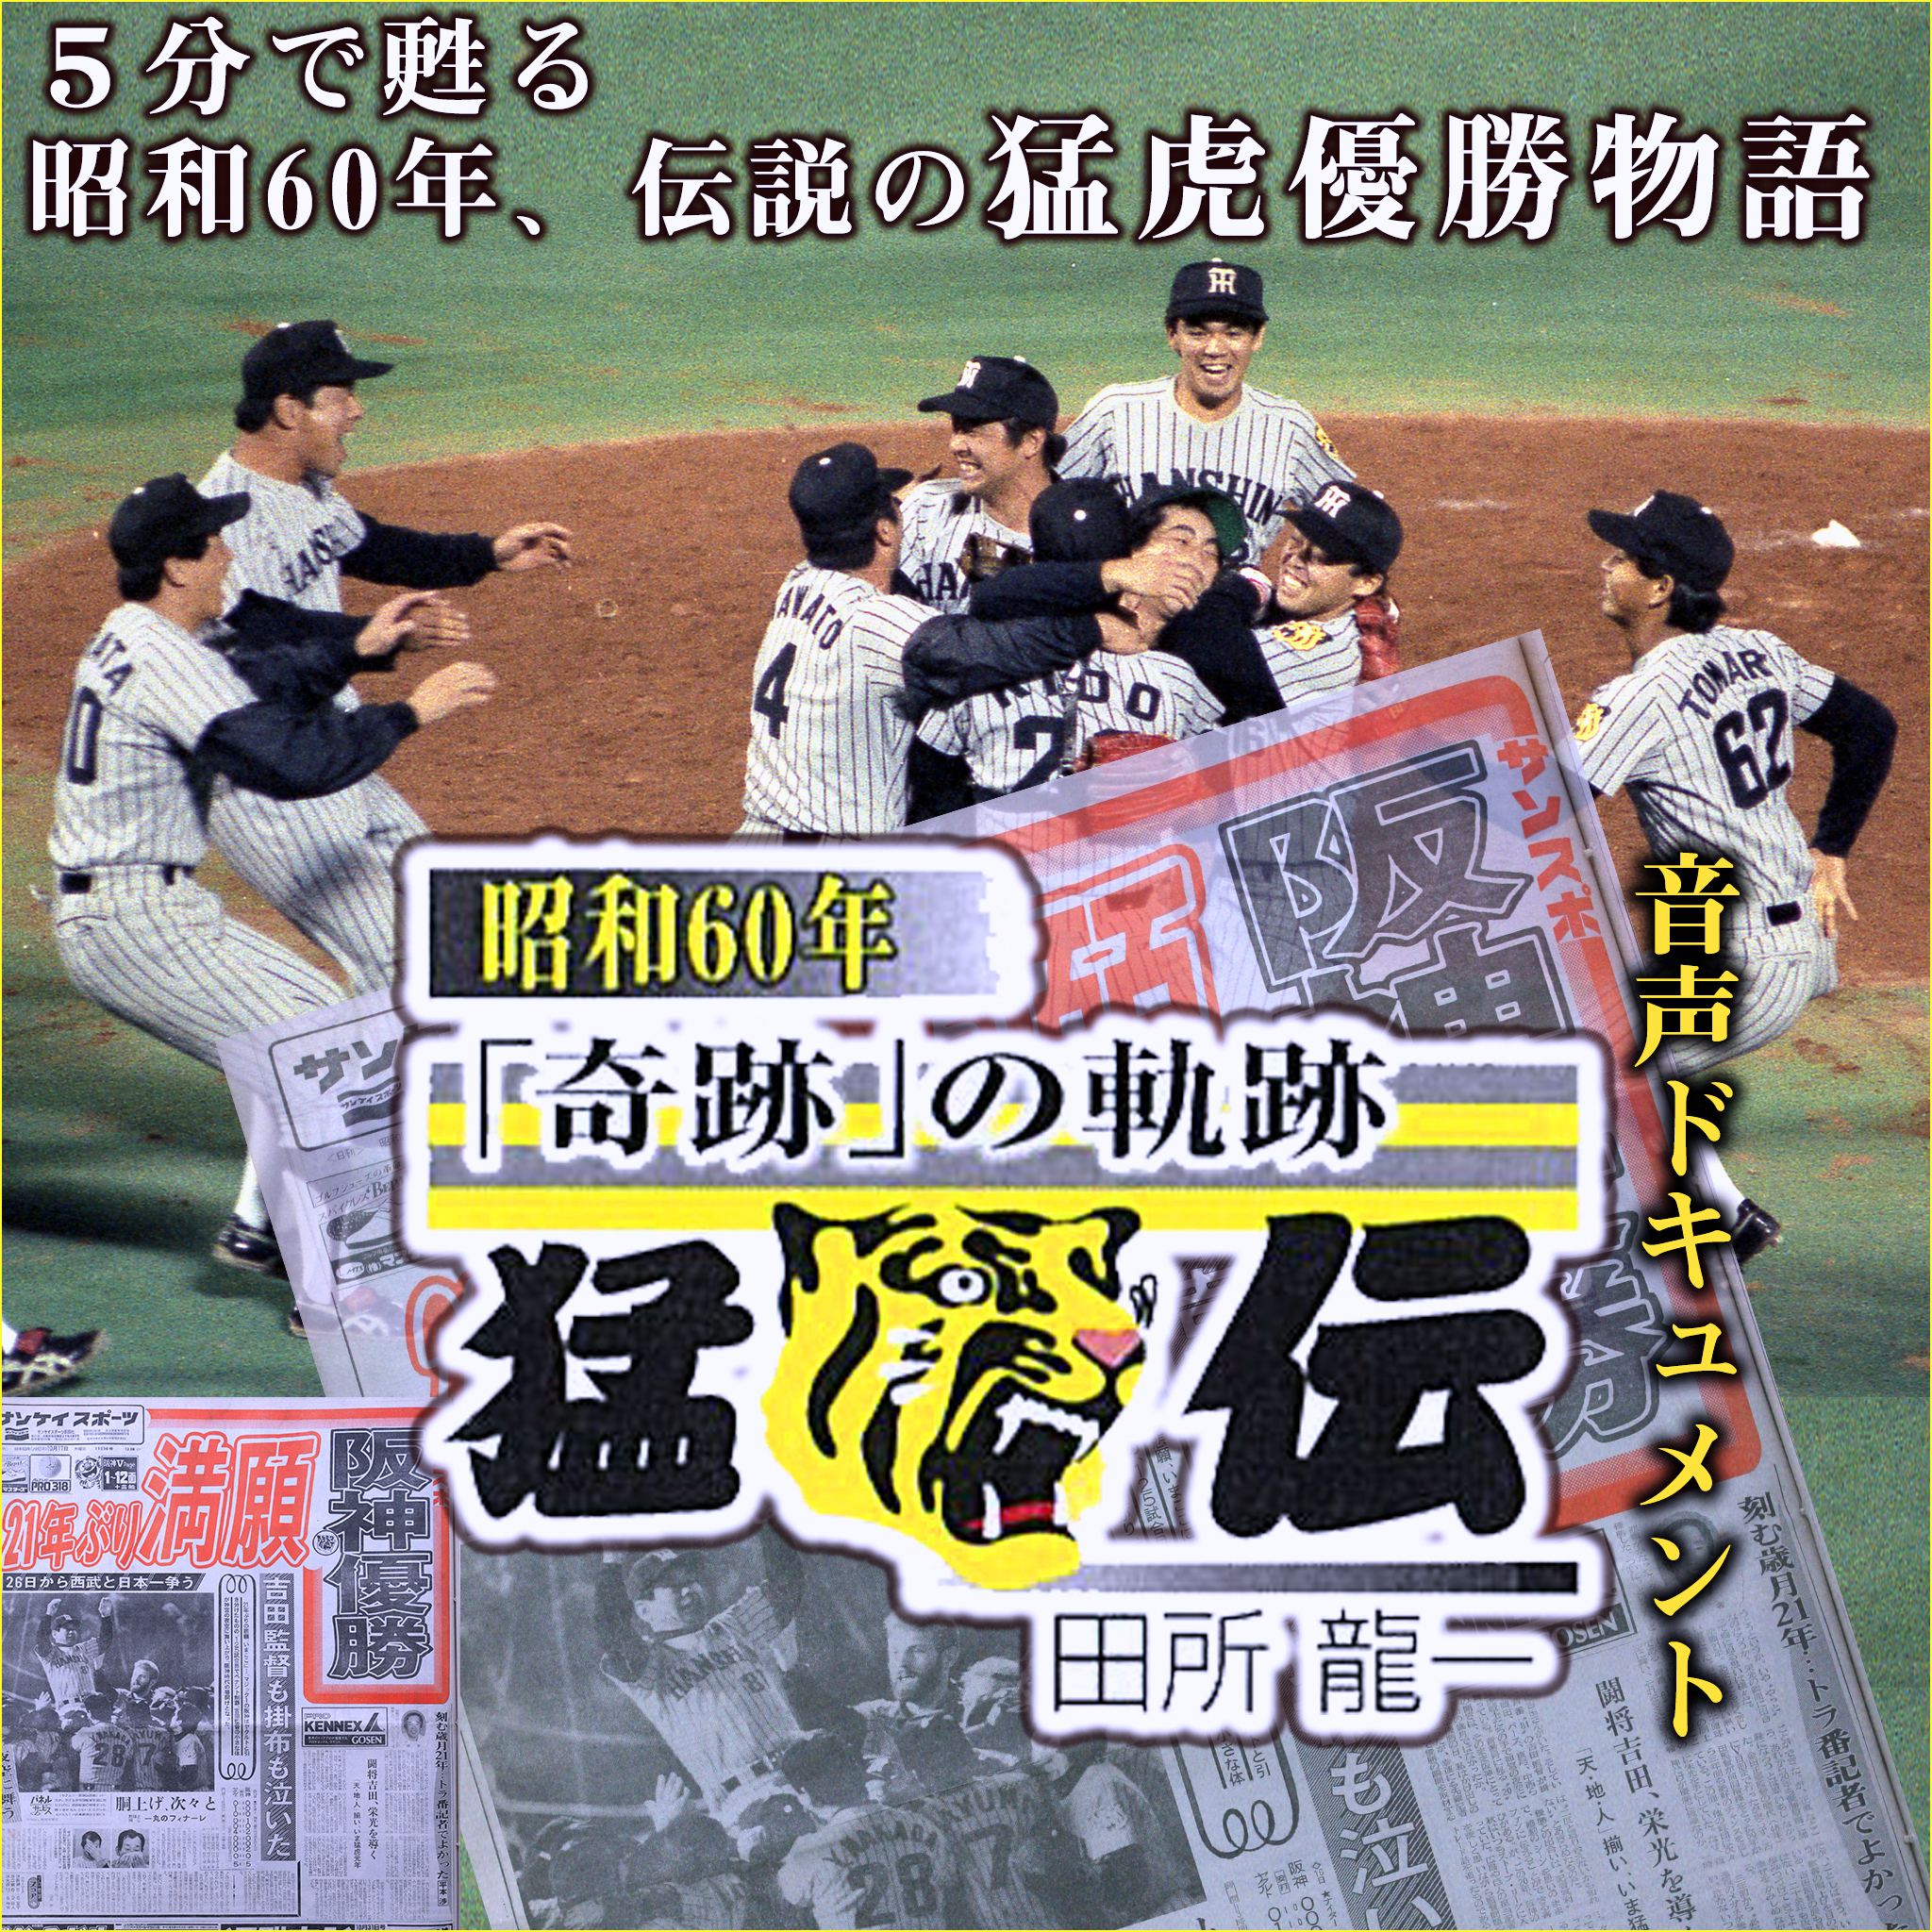 ≪85年 阪神タイガース≫ 球団創立50周年の優勝迄の全試合の新聞縮小版 